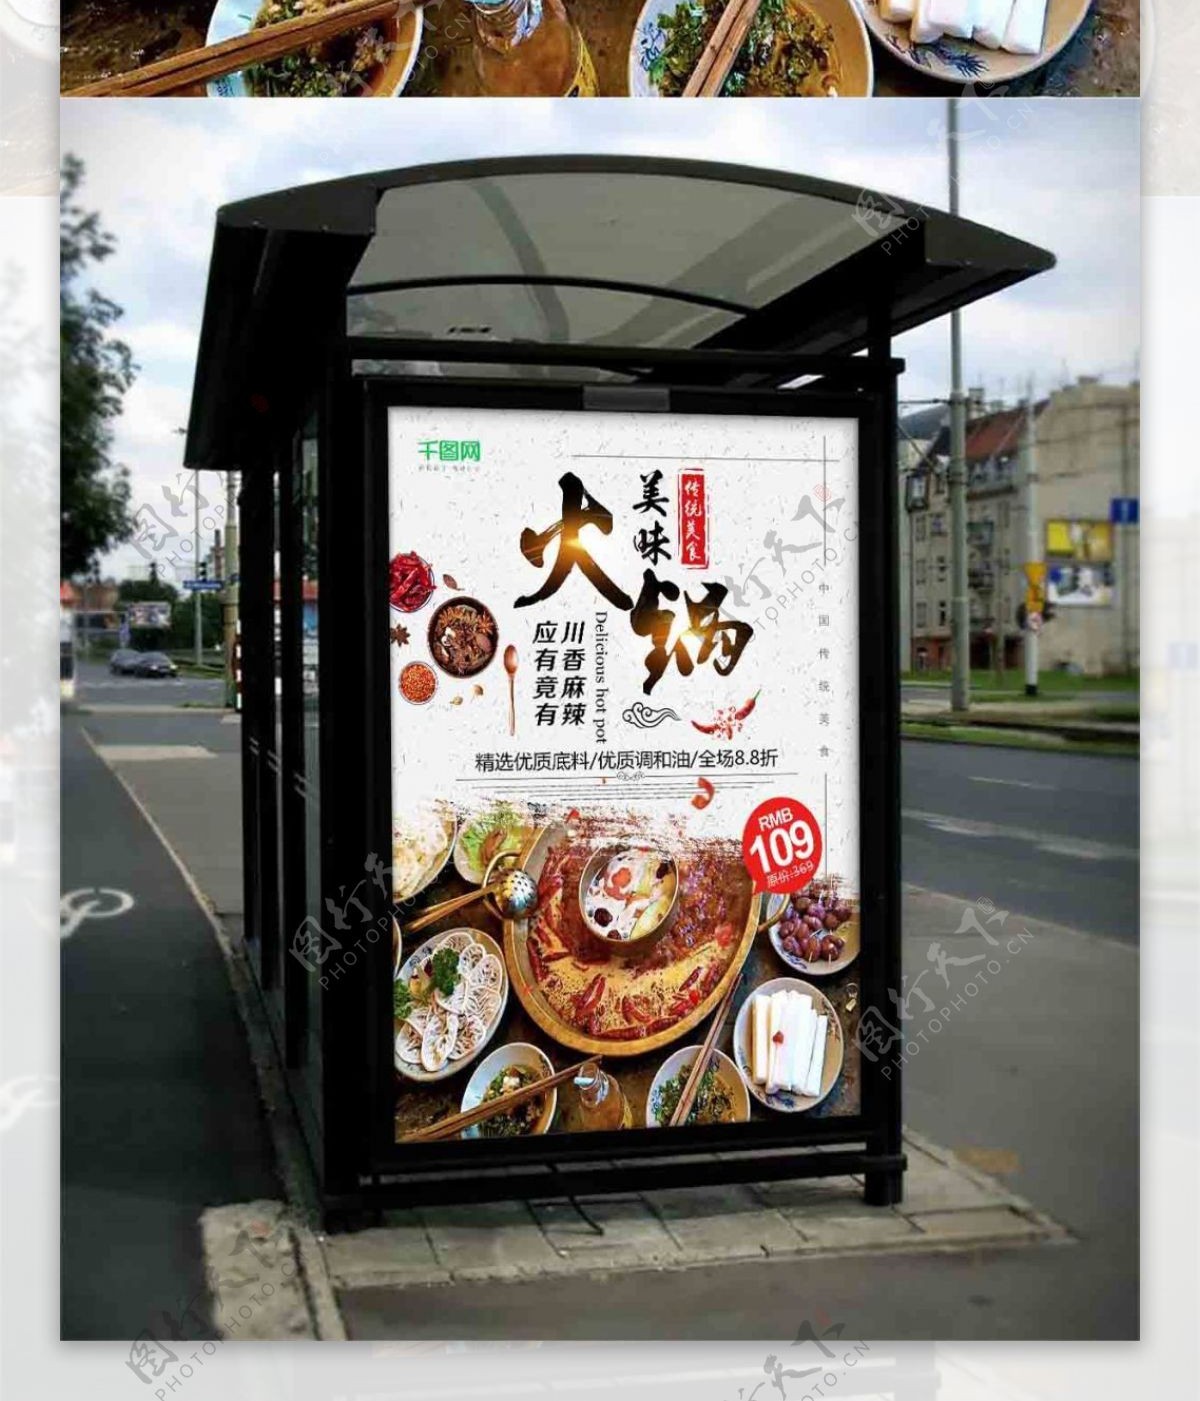 中国传统美食夏日美食火锅季海报